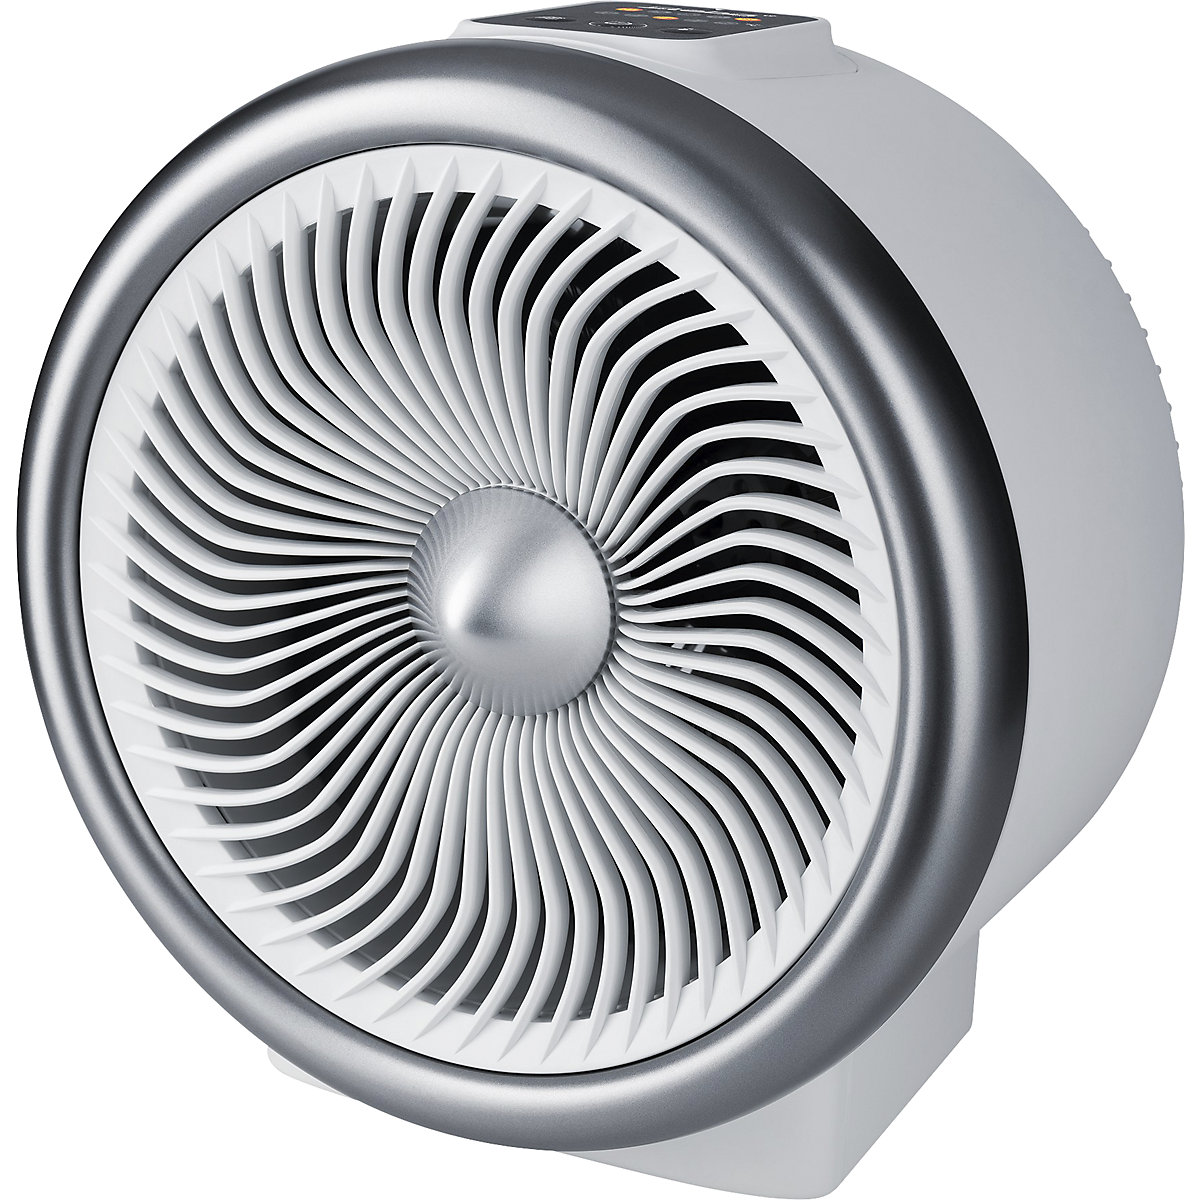 Ventilator-Heizlüfter HOT + COLD: HxBxT 275 x 260 x 200 mm